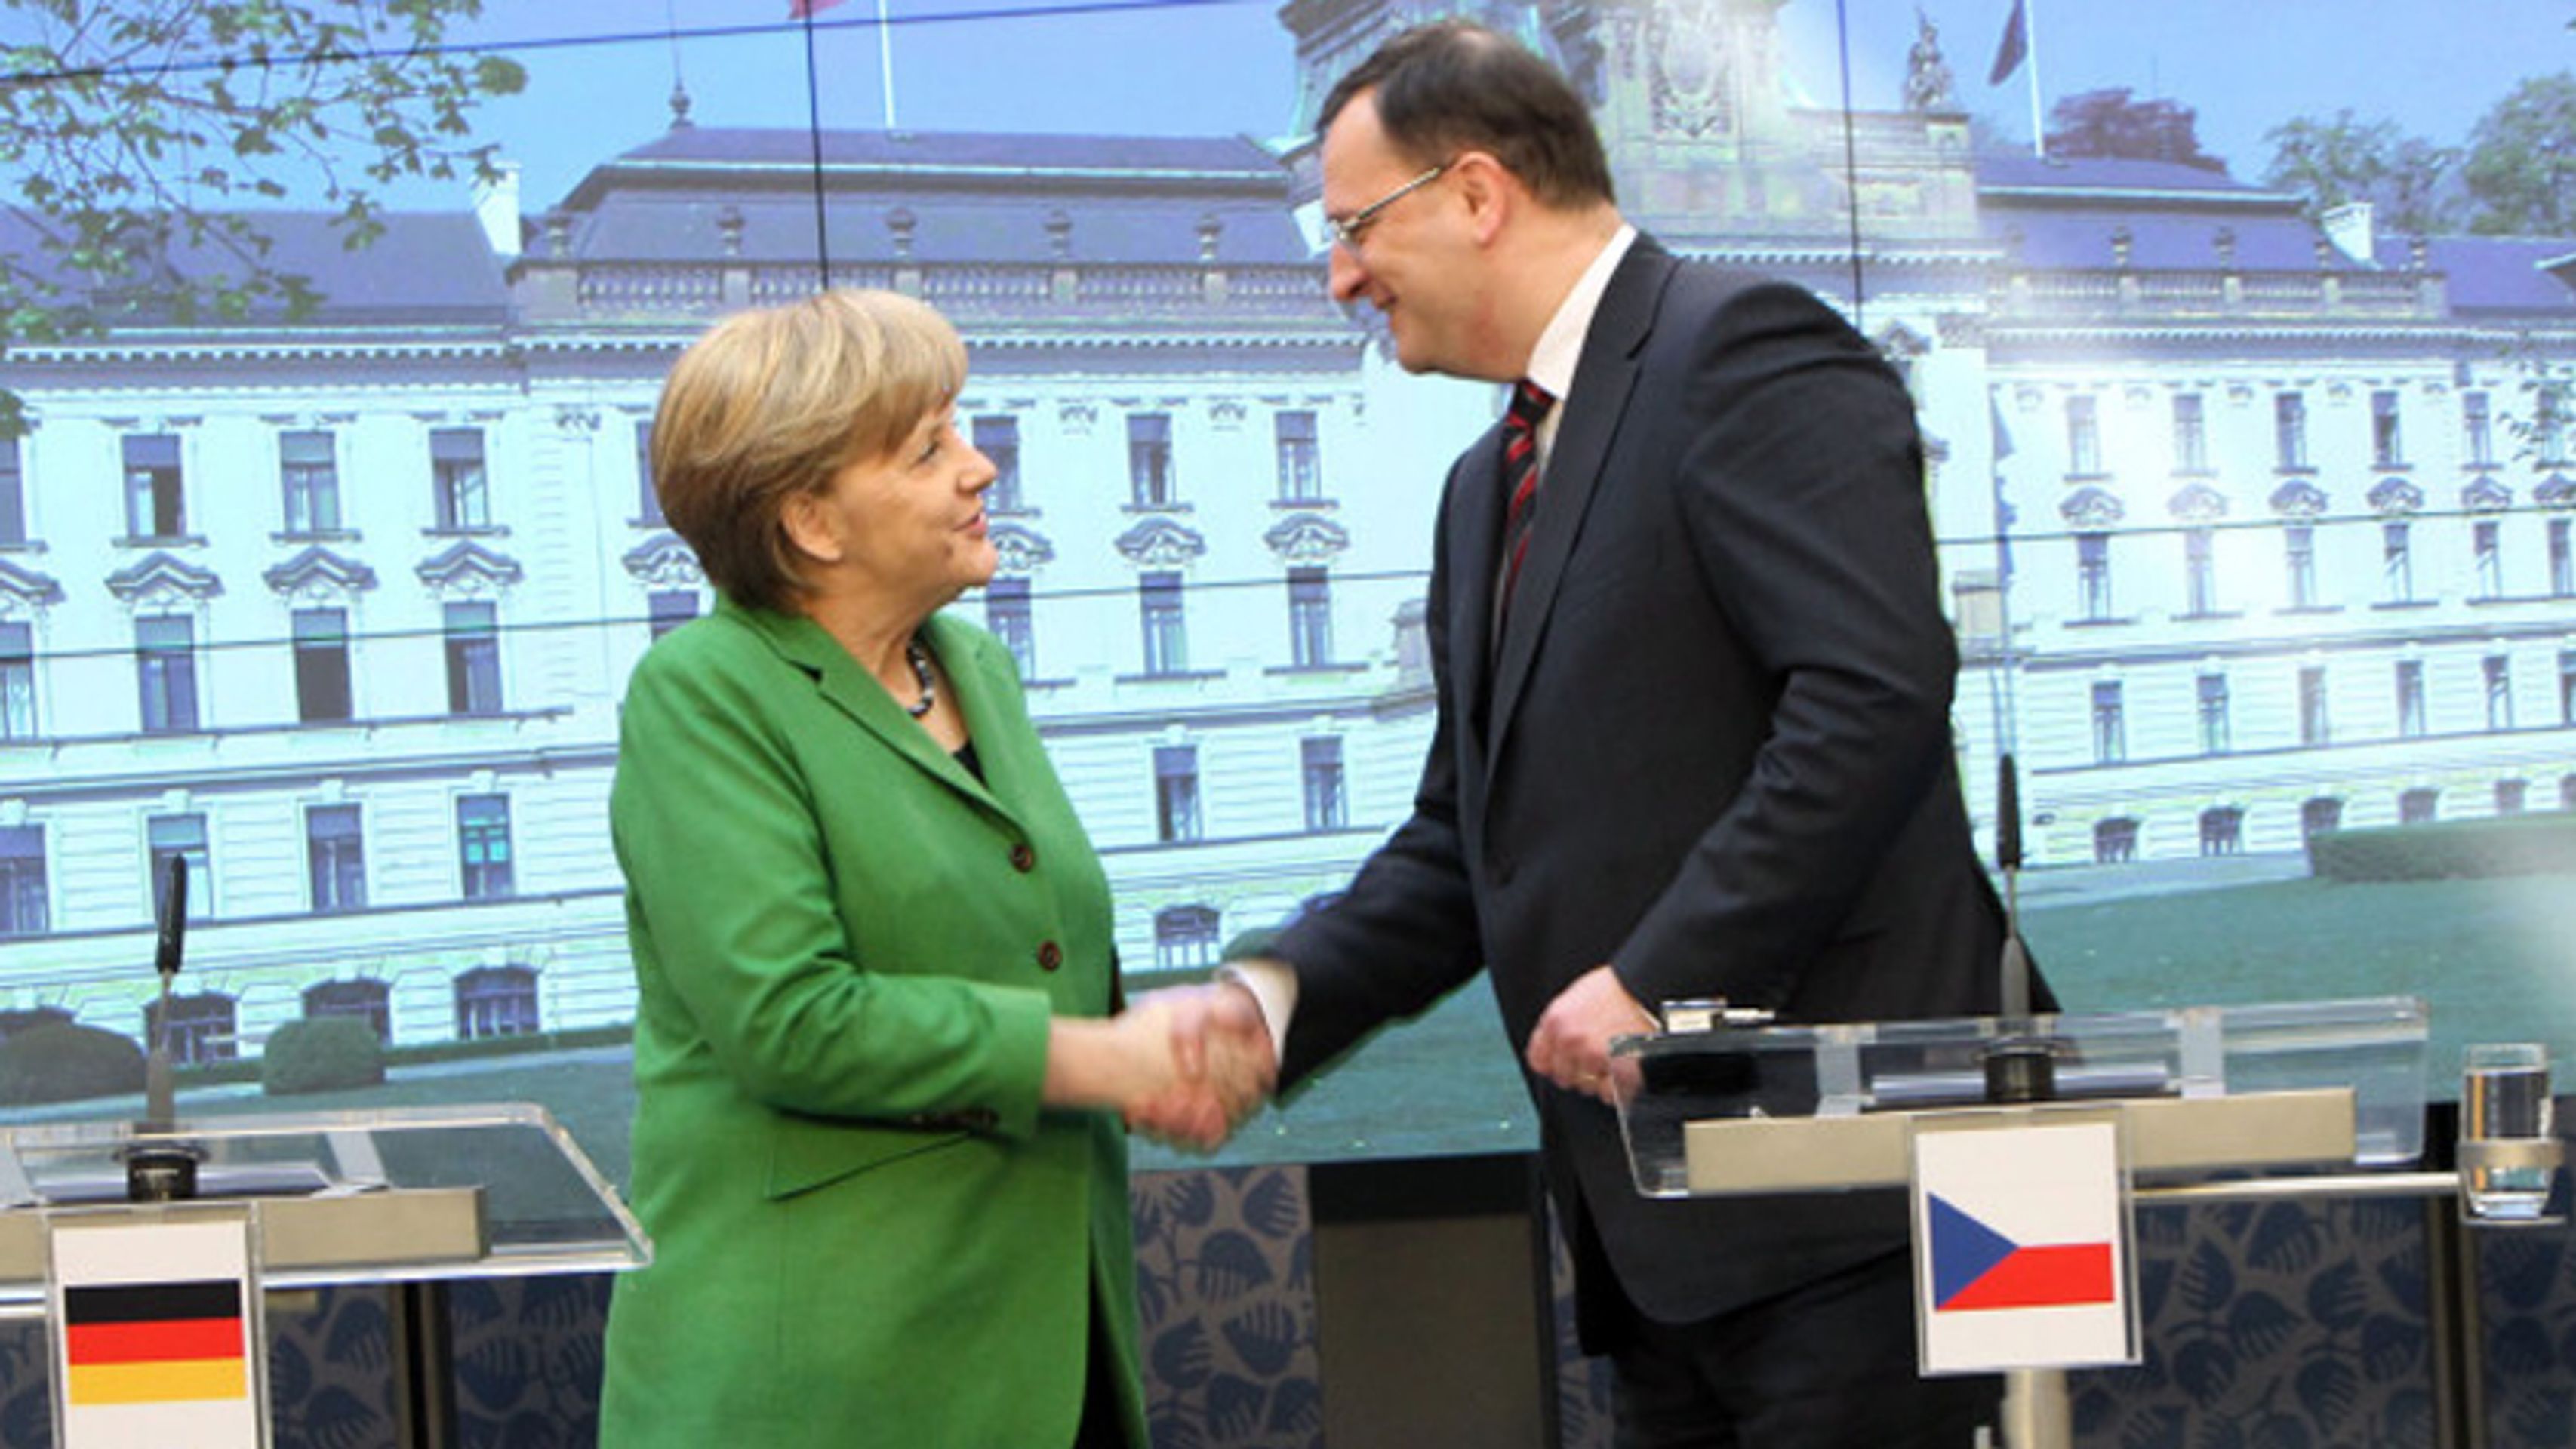 Angela Merkelová v Praze - 1 - Angela Merkelová v Praze (8/11)